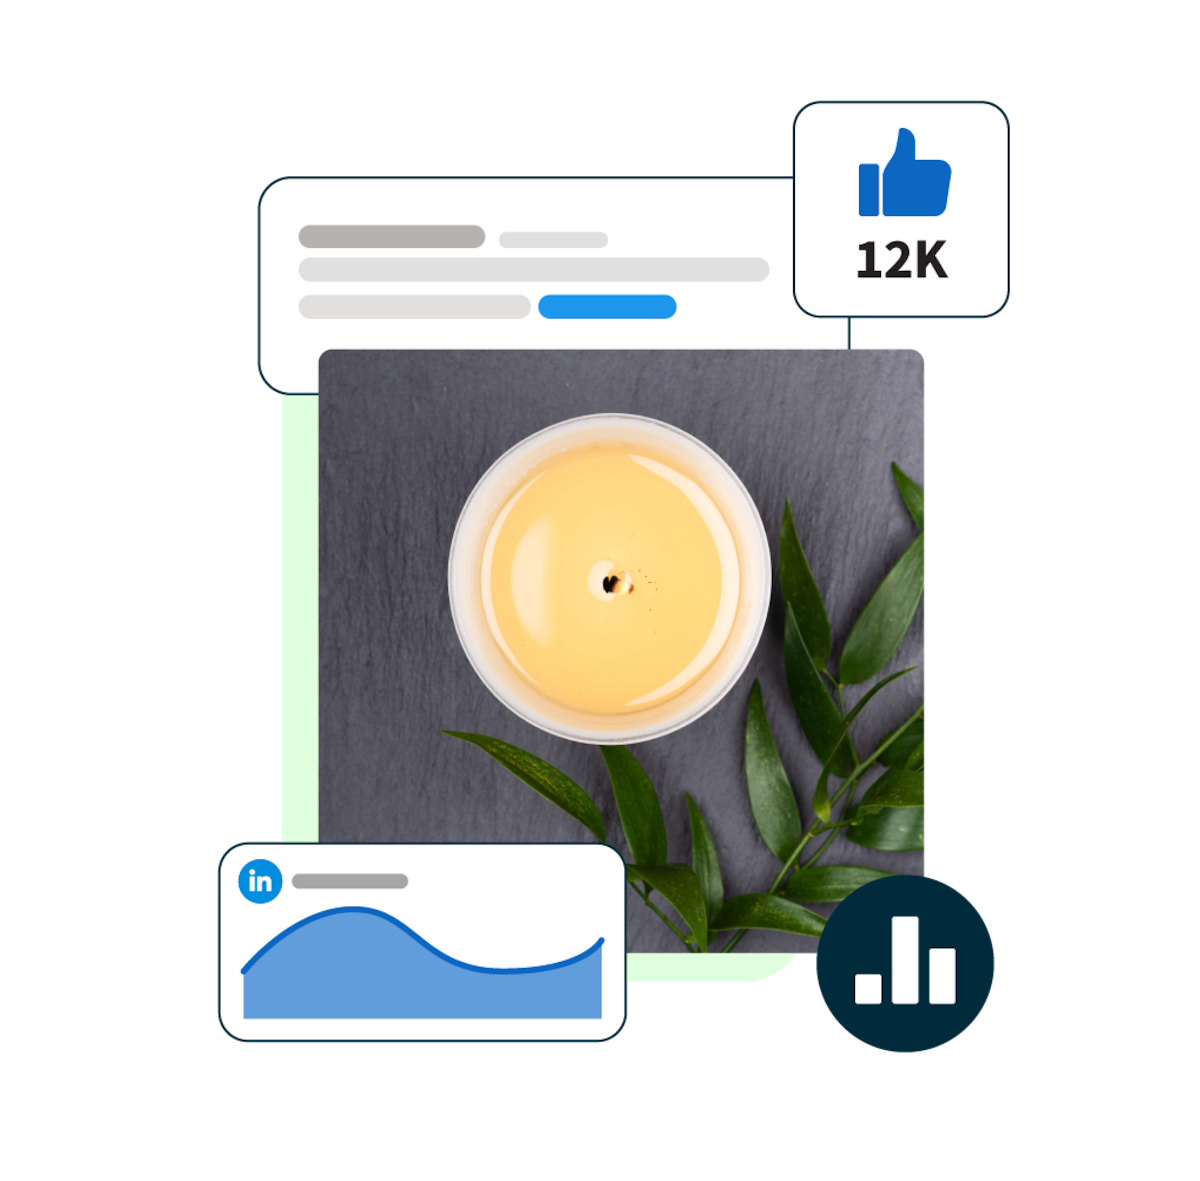 immagine di una candela con pop-up di statistiche di LinkedIn circostanti